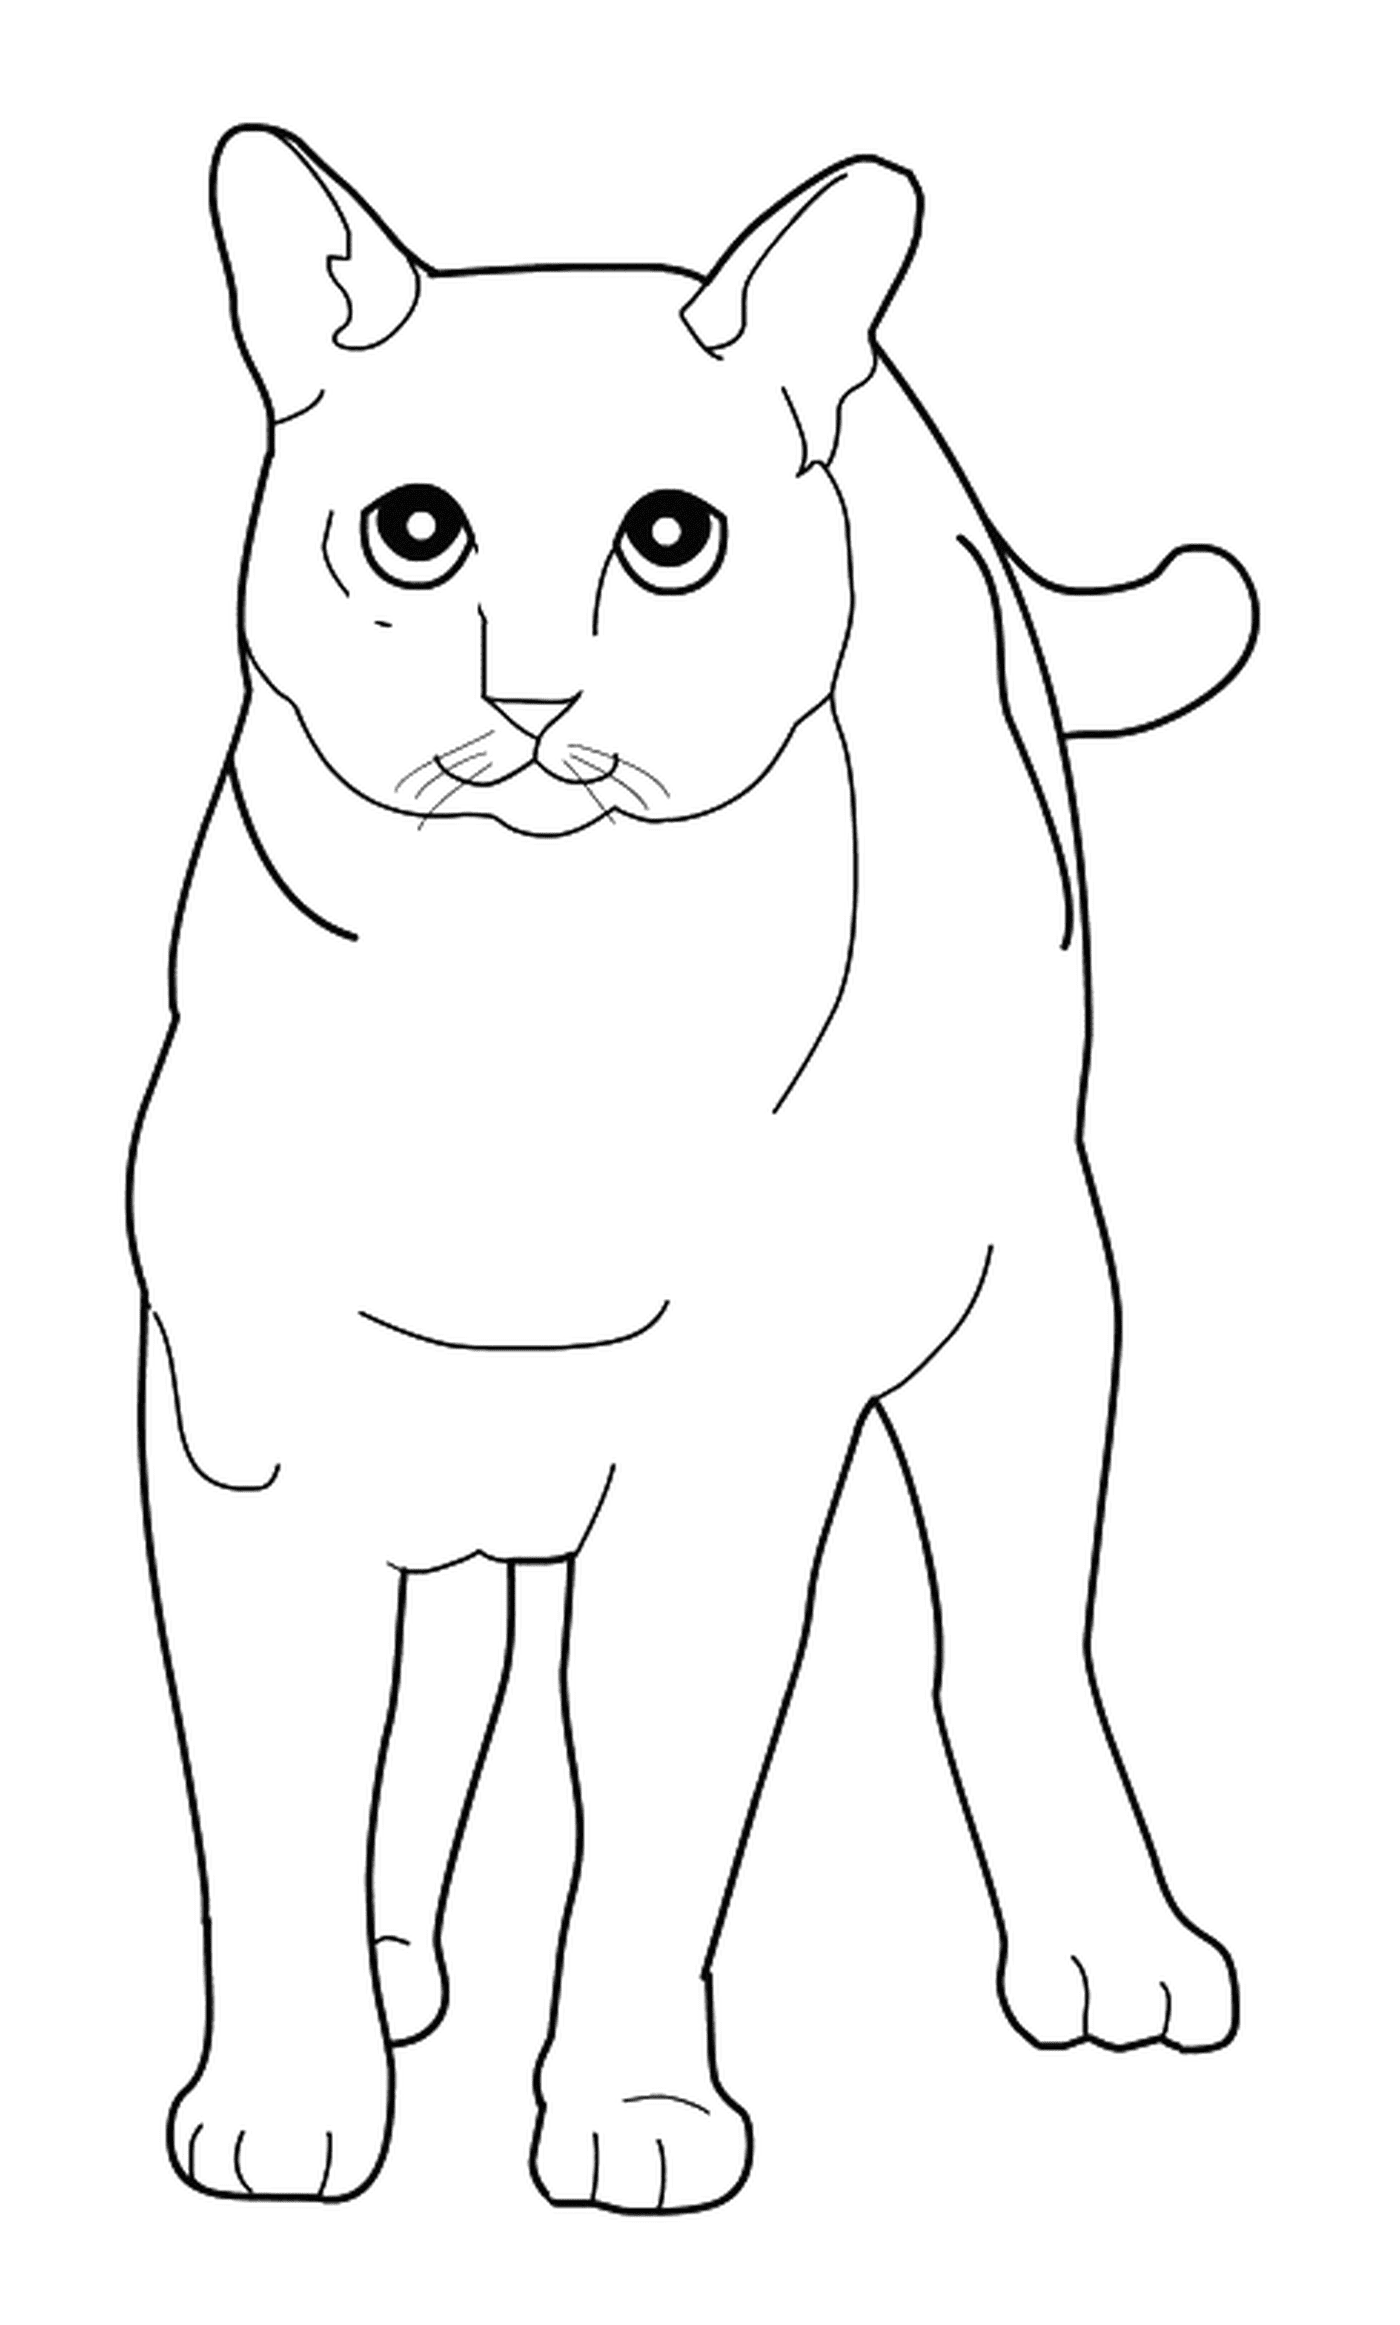   Un Tonkinois, un chat debout dans un dessin en ligne 